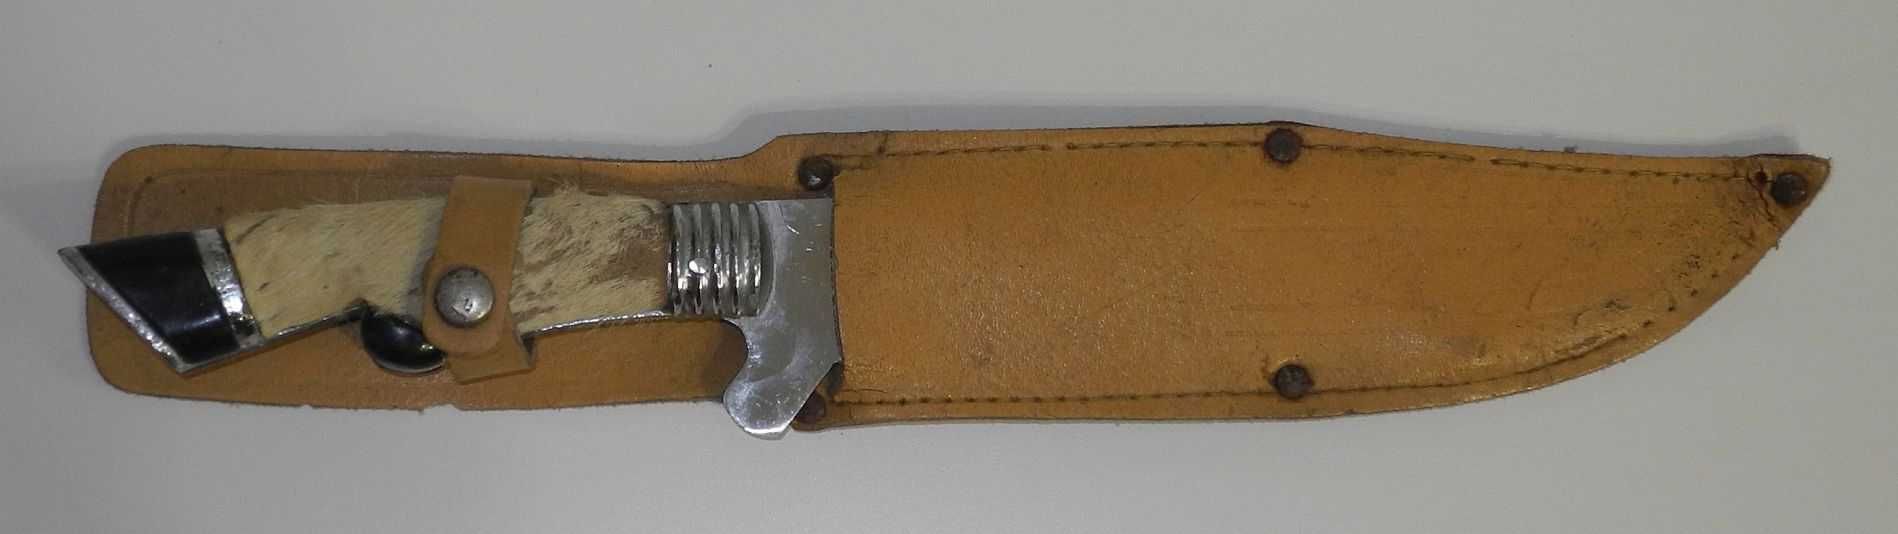 Stary nóż MYŚLIWSKI w skórzanej pochwie - duży 32 cm